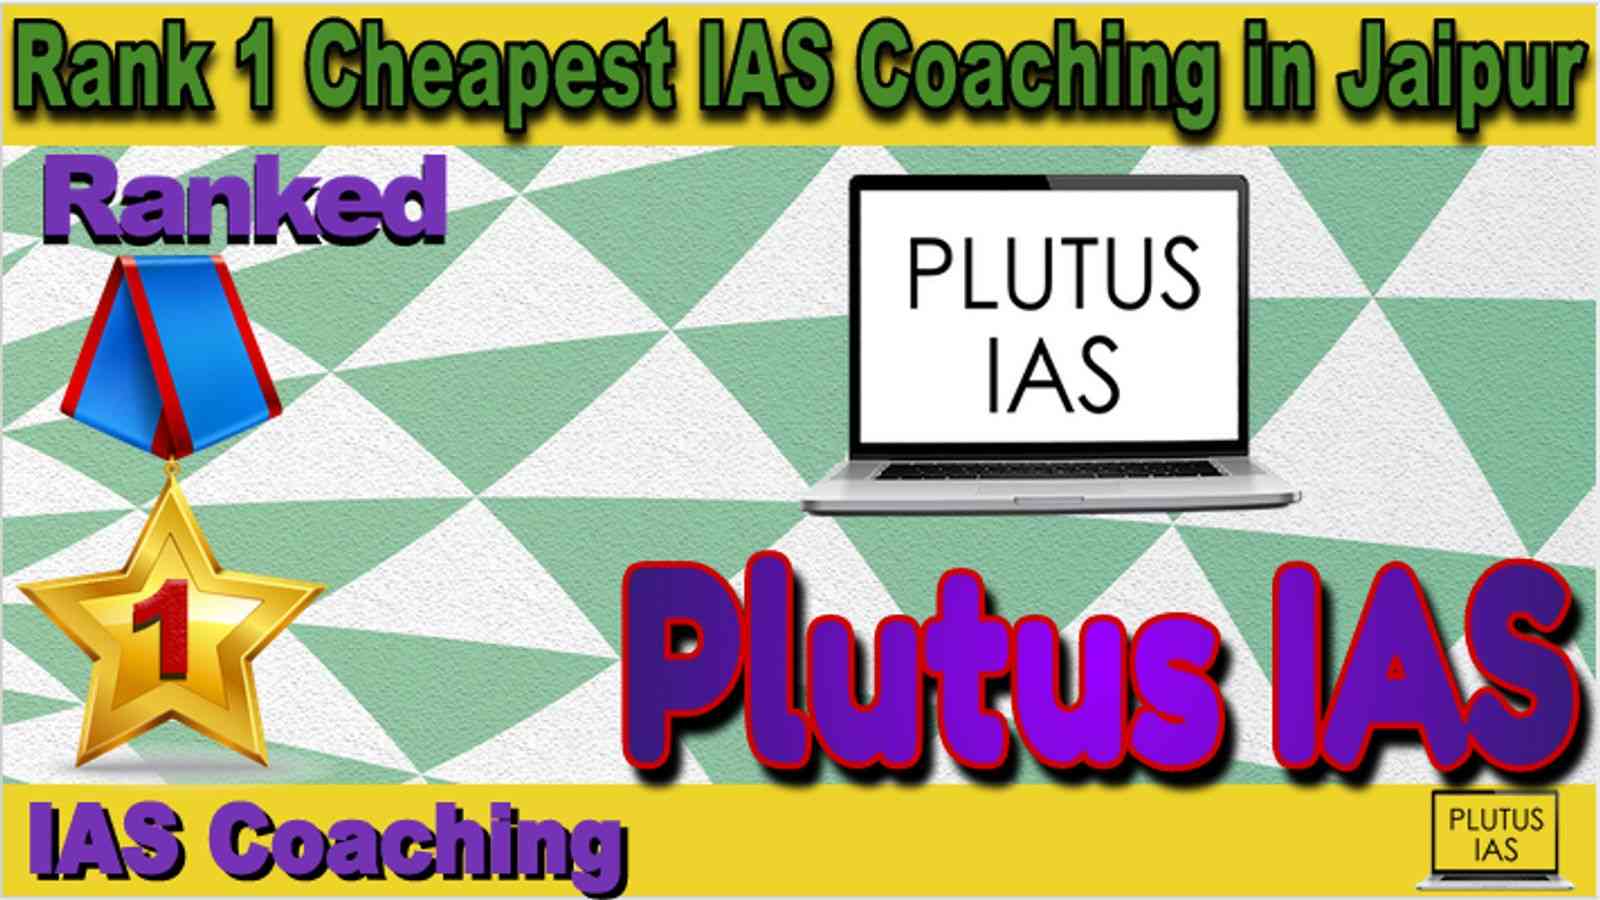 Rank 1 Cheapest IAS Coaching in Jaipur